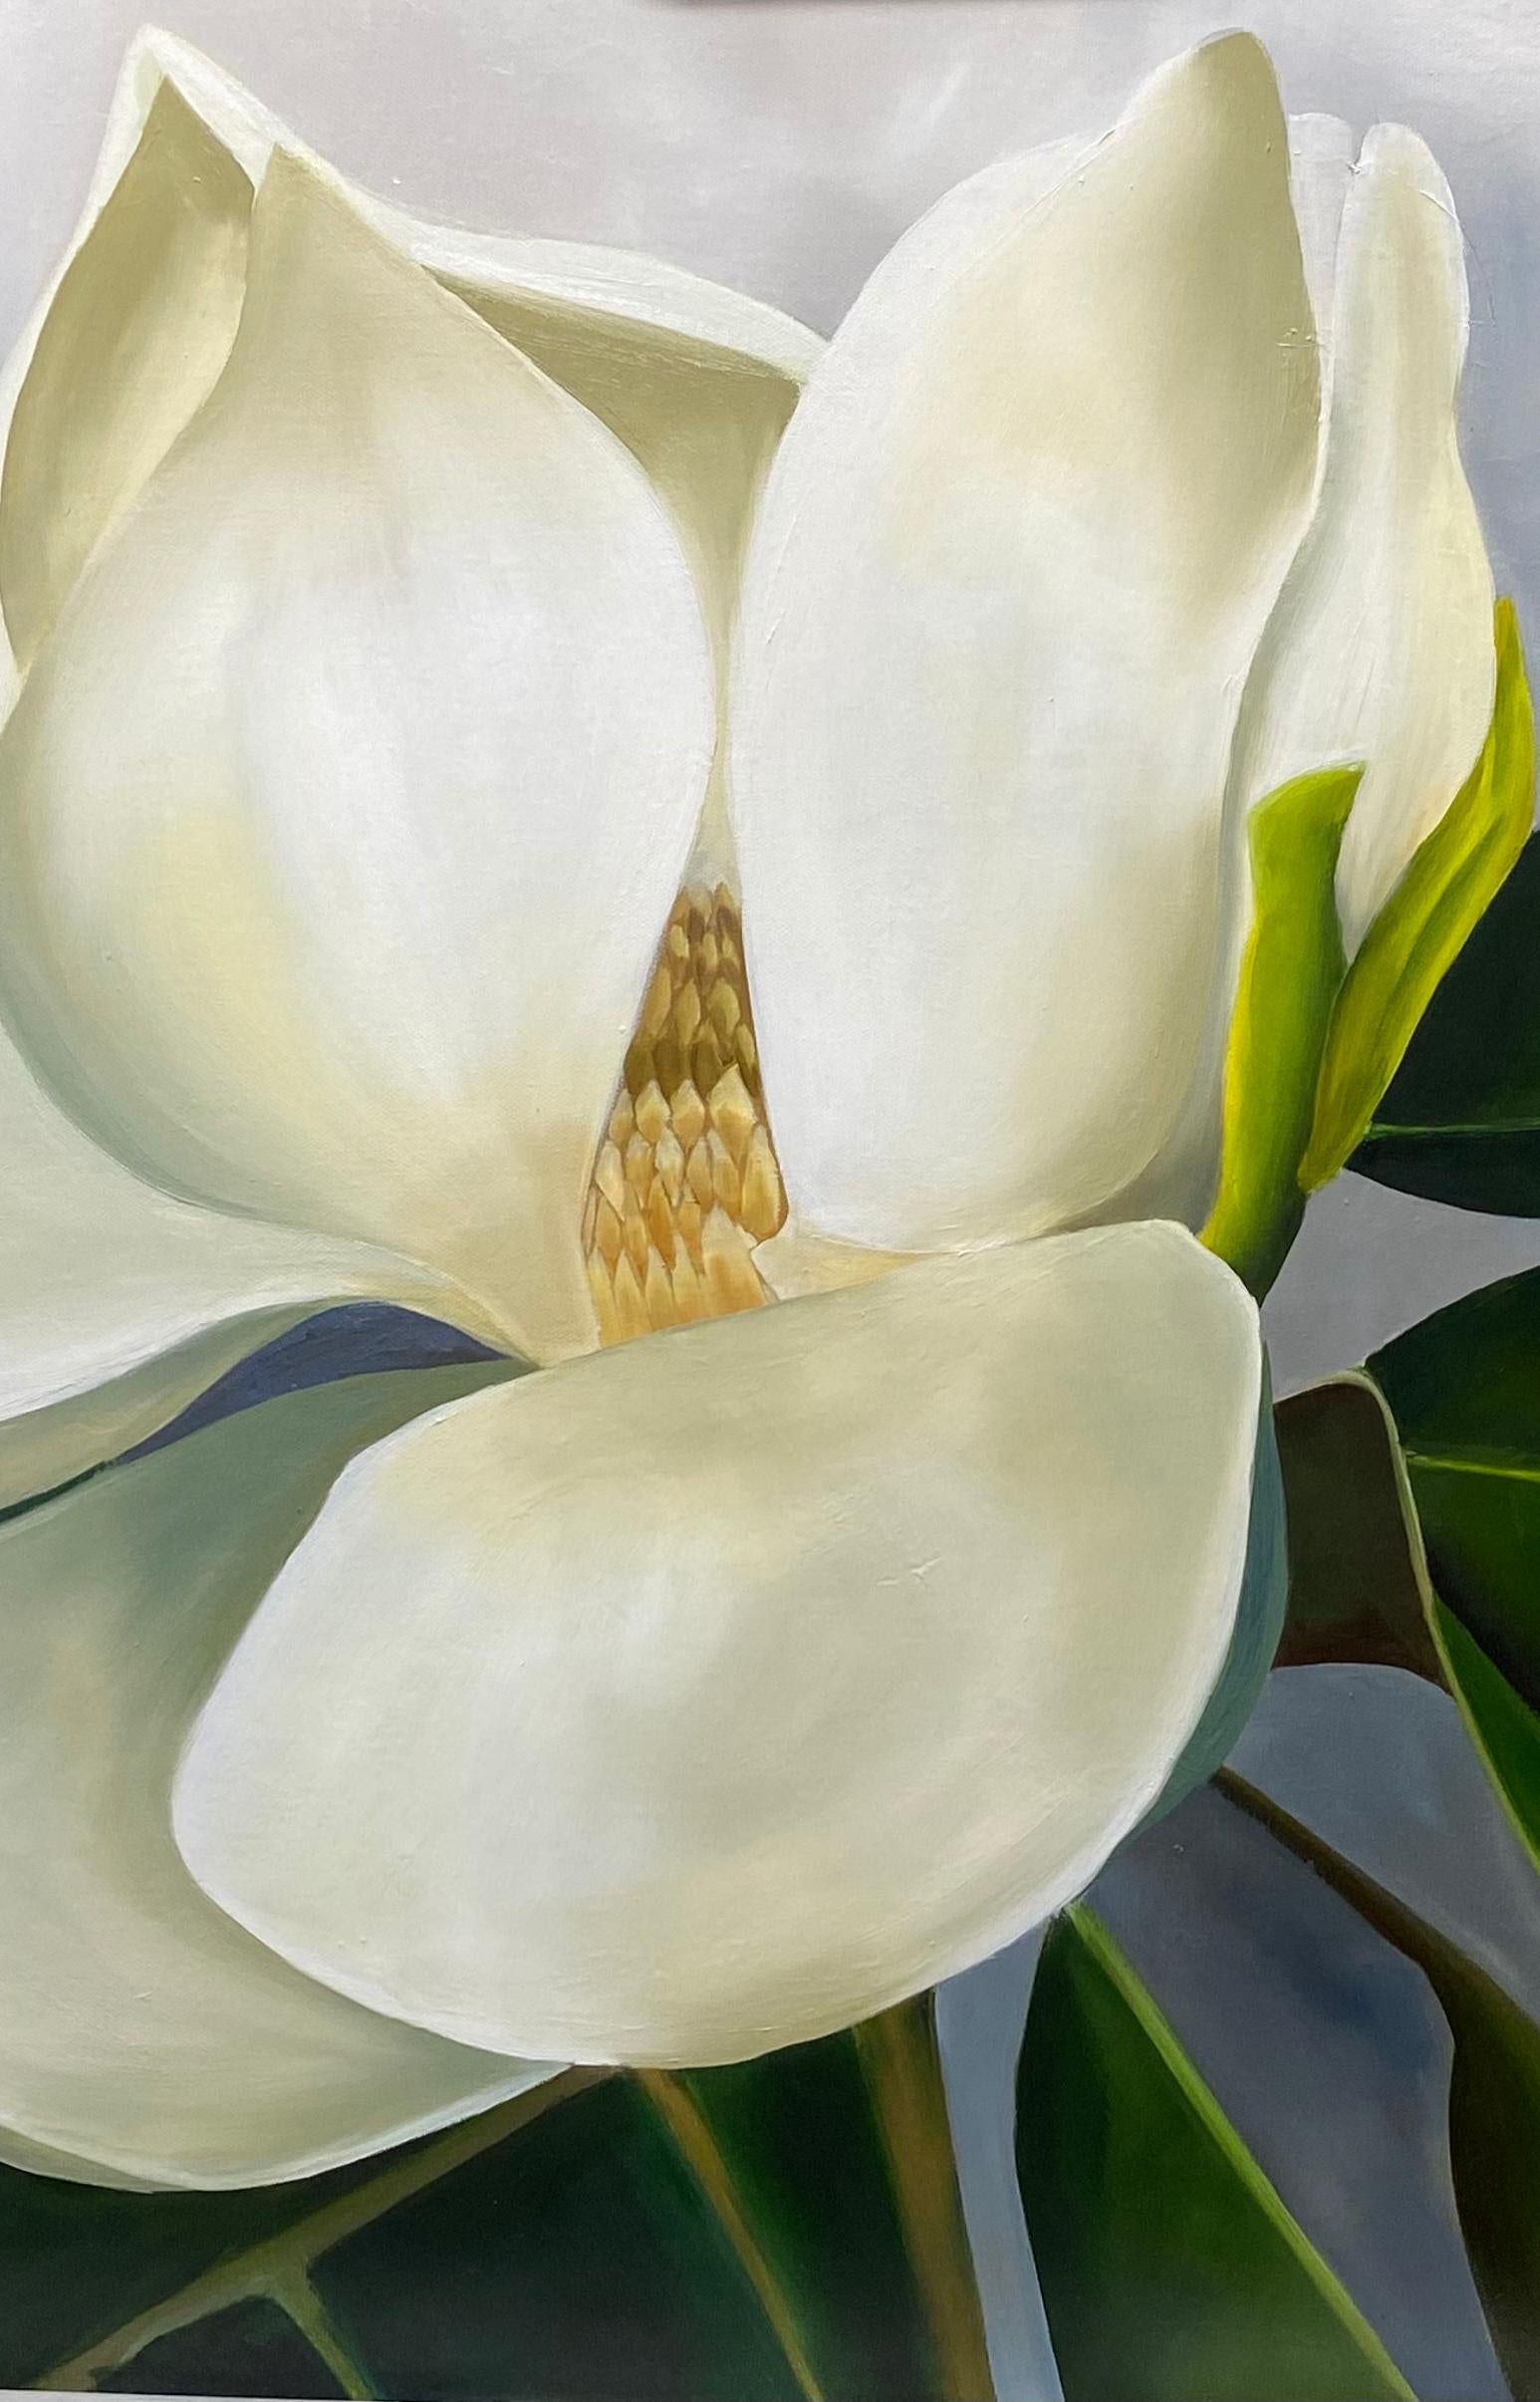 Magnolia après la pluie est une huile sur toile de 24 x 36. Galerie emballée
Susan est originaire de Houston. Elle est passionnée par la peinture à l'huile et se spécialise dans les fleurs à grande échelle. C'est en photographiant des fleurs lors de